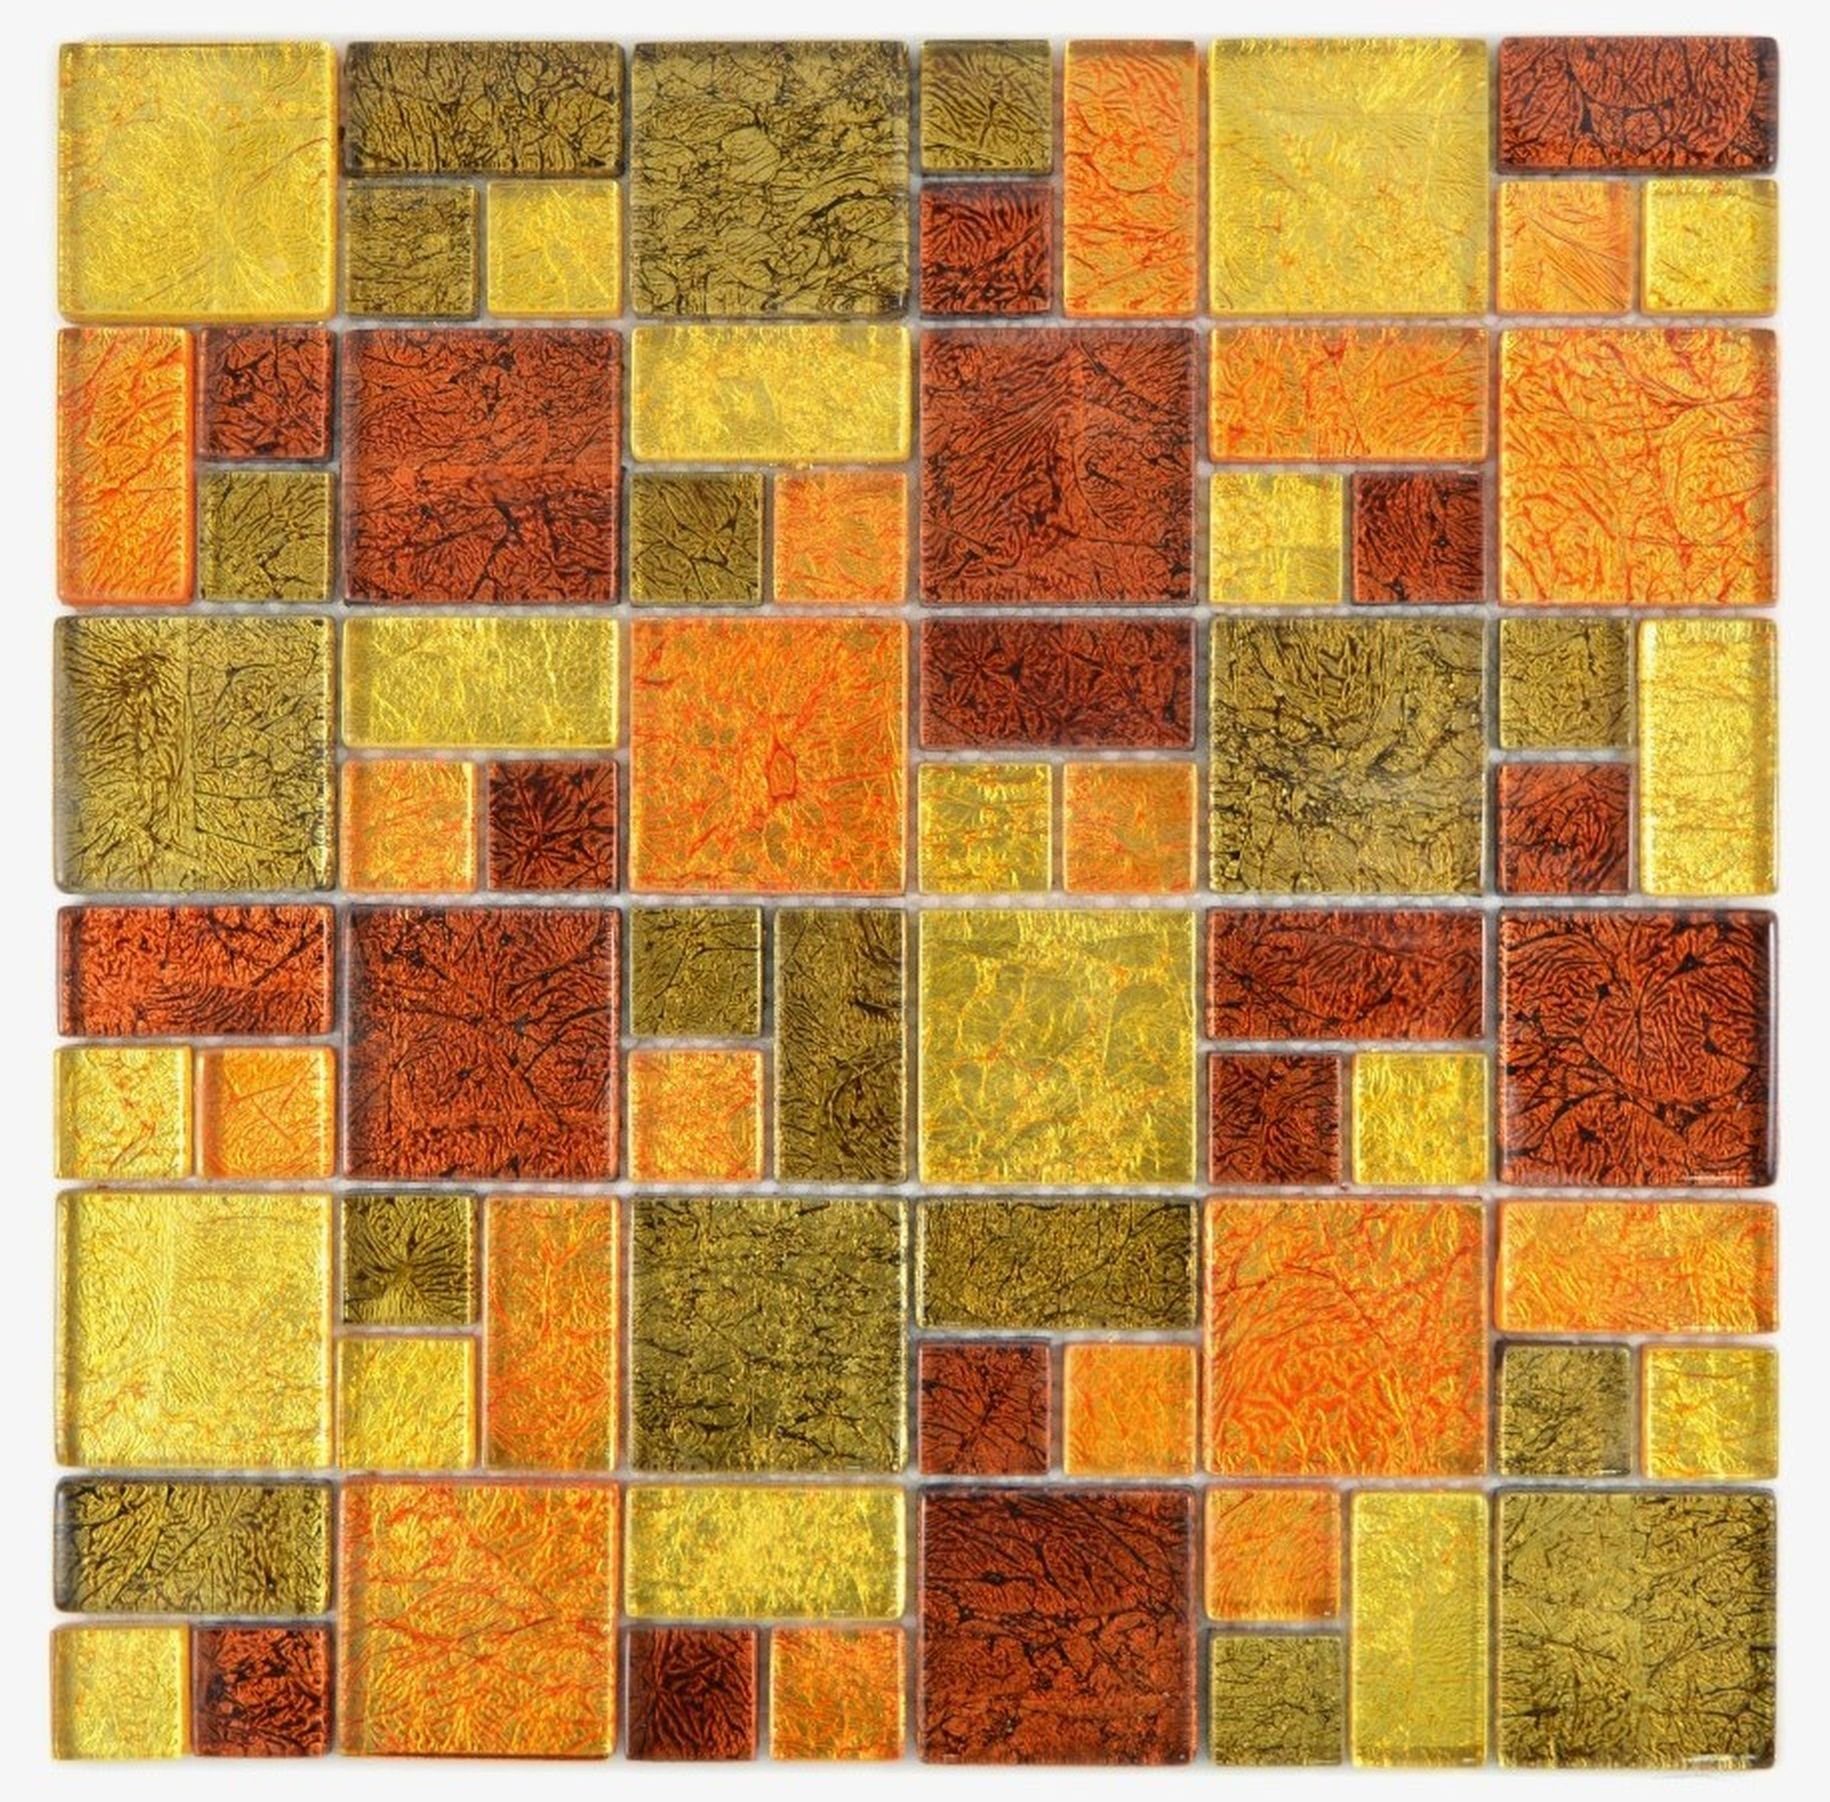 Mosani Mosaikfliesen Glasmosaik gold Mosaik Kombintation orange Struktur Fliesenspiegel